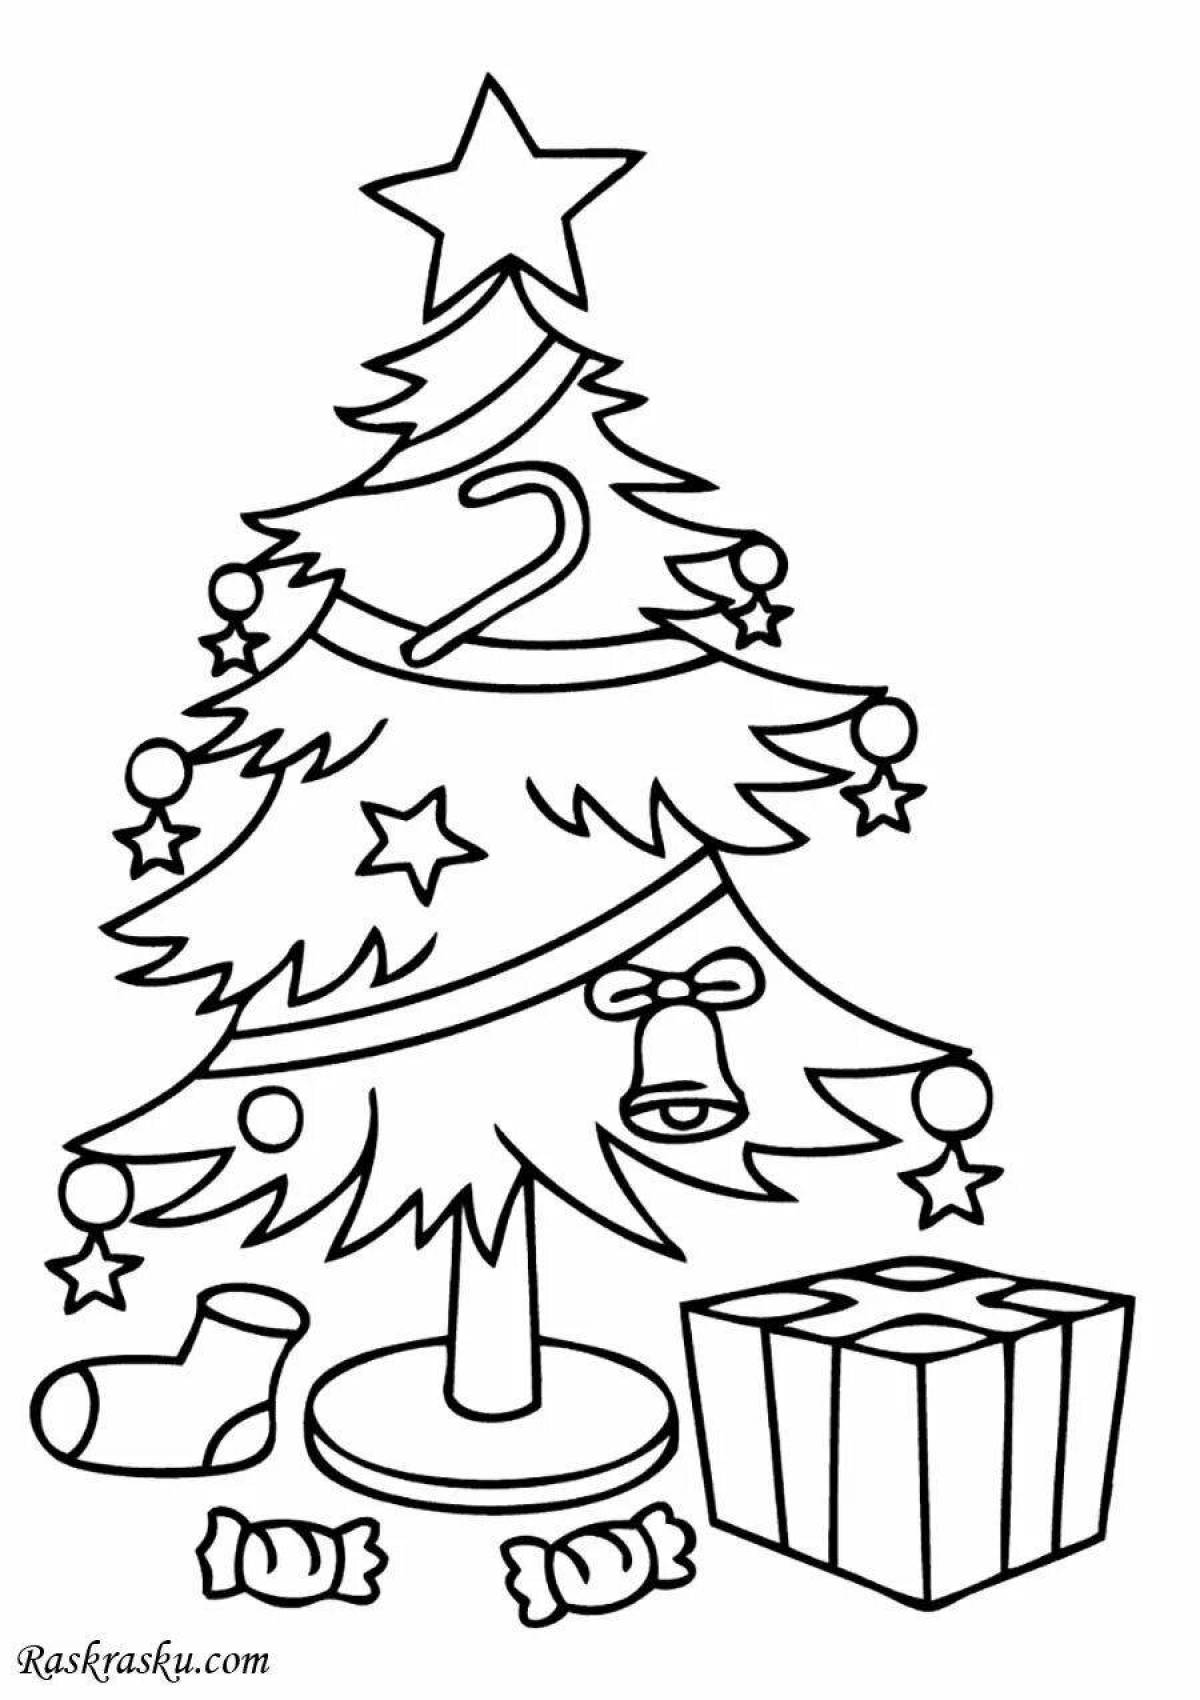 Светящаяся раскраска «рождественская елка» для детей